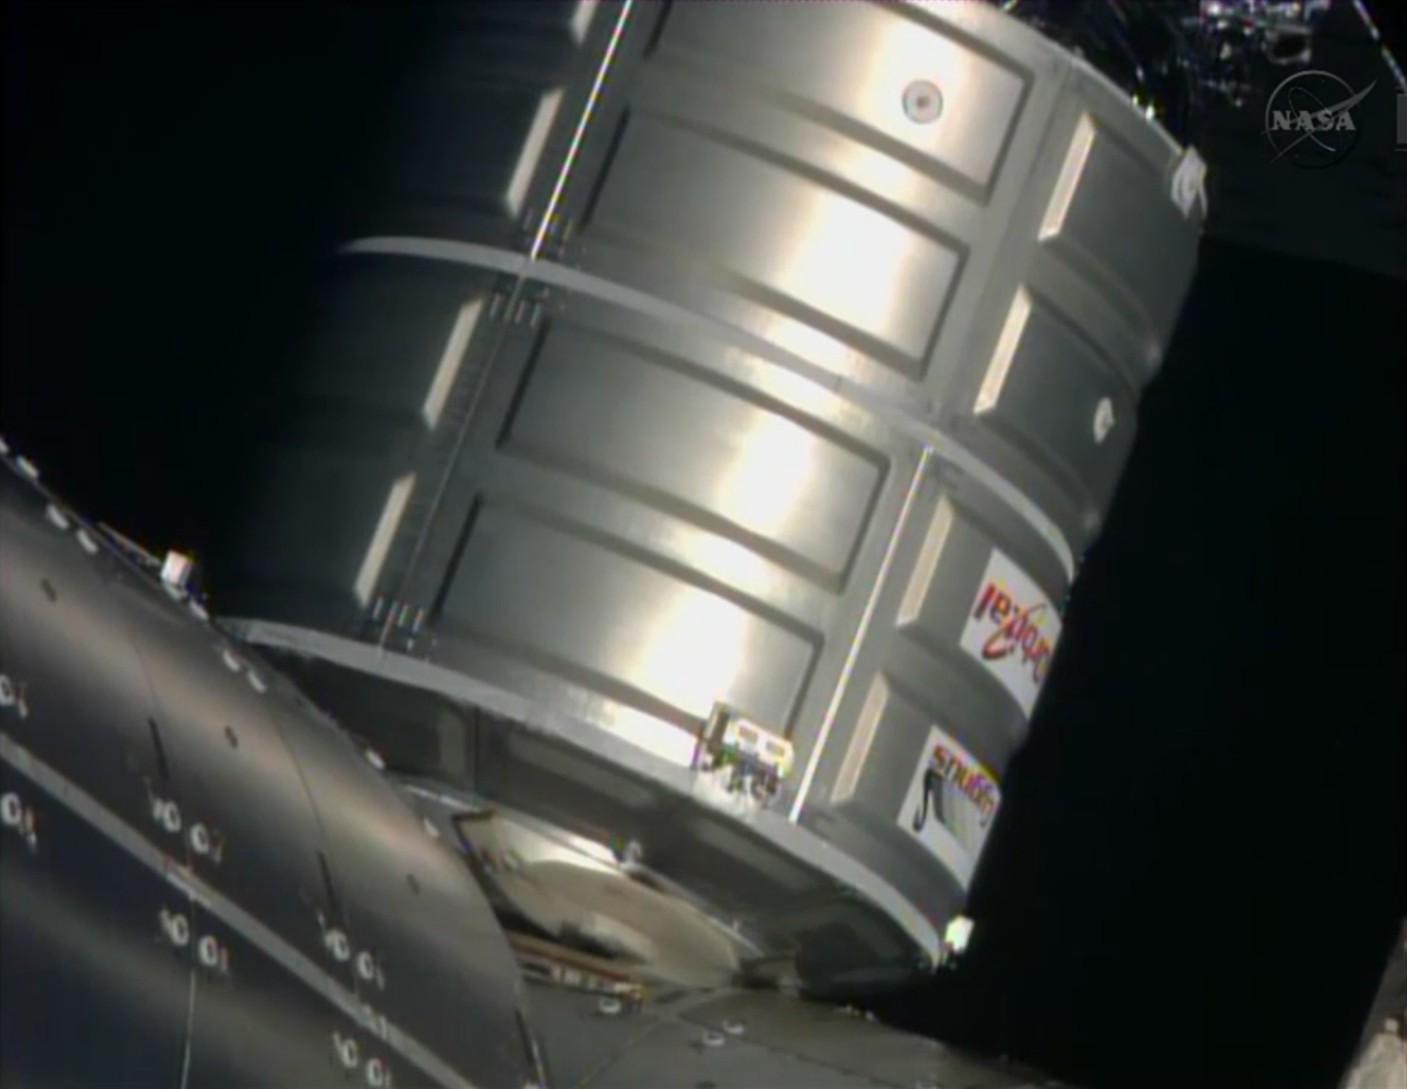 Le Cygnus est amarré à l'ISS (Crédits : NASA TV)